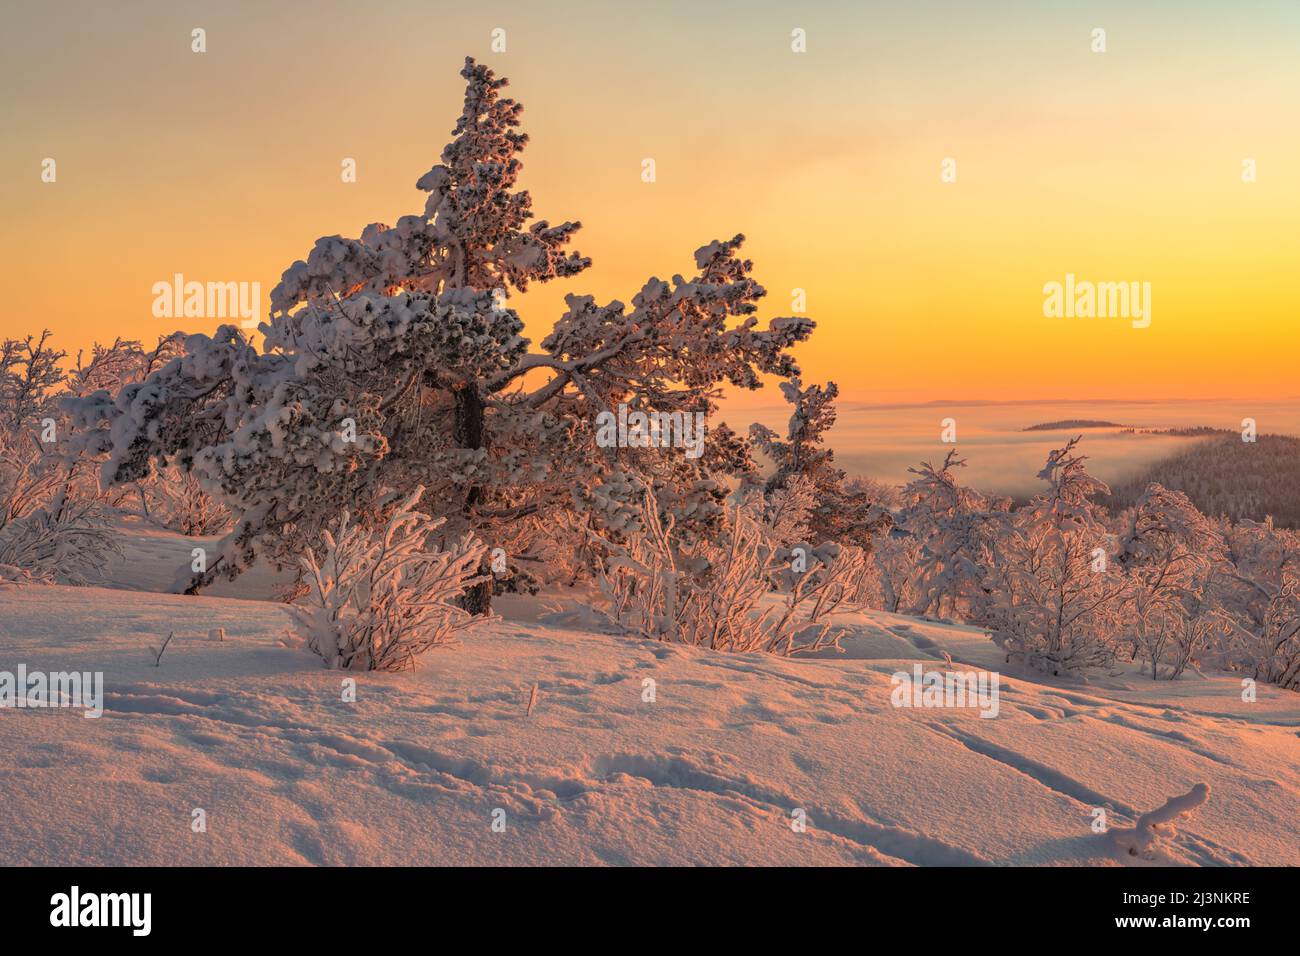 Winterlandschaft im November mit verschneiten Bäumen und buntem Himmel, Gällivare, Schwedisch Lappland, Schweden Stockfoto